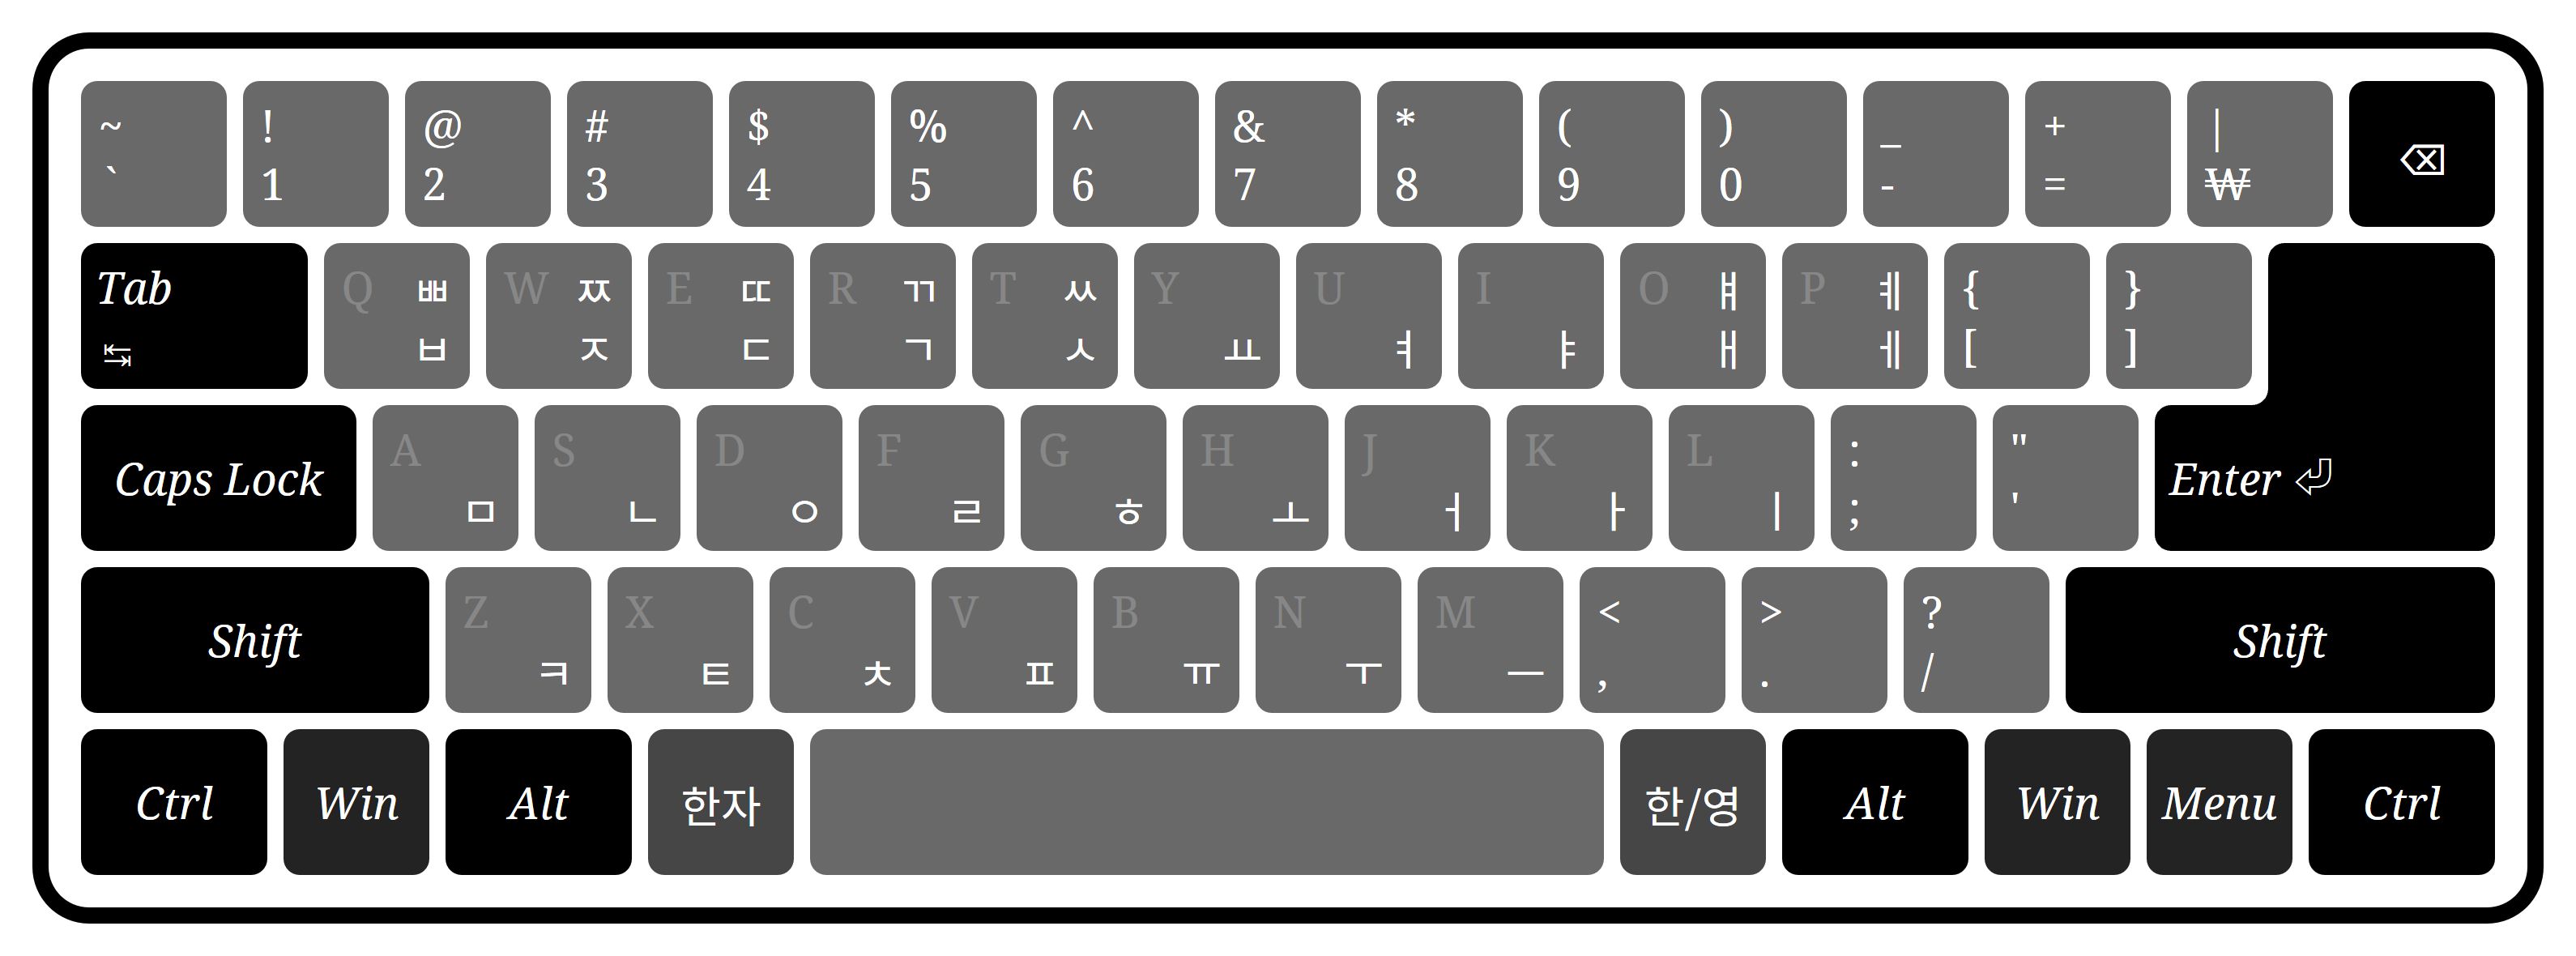 韩国键盘相对于 ANSI 美国键盘多了「한/영」和「한자」两个键